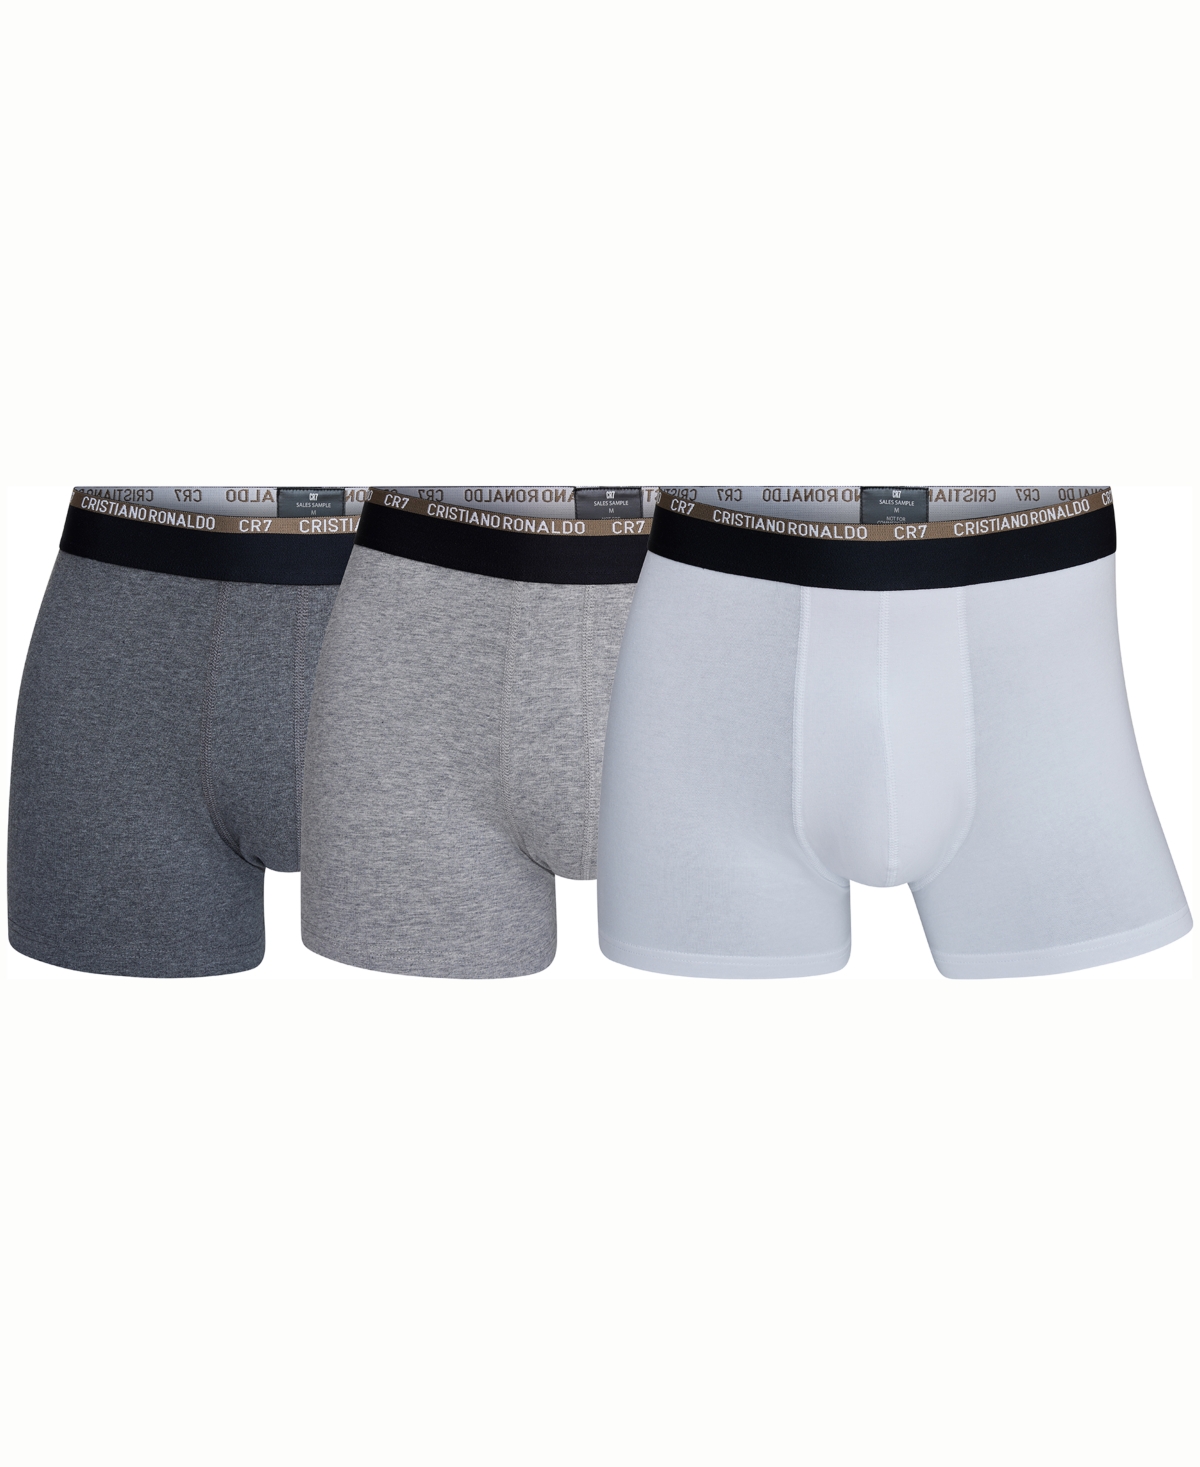 Men's Cotton Blend Trunks, Pack of 3 - Light Gray, Dark Gray, White, Black, Lig